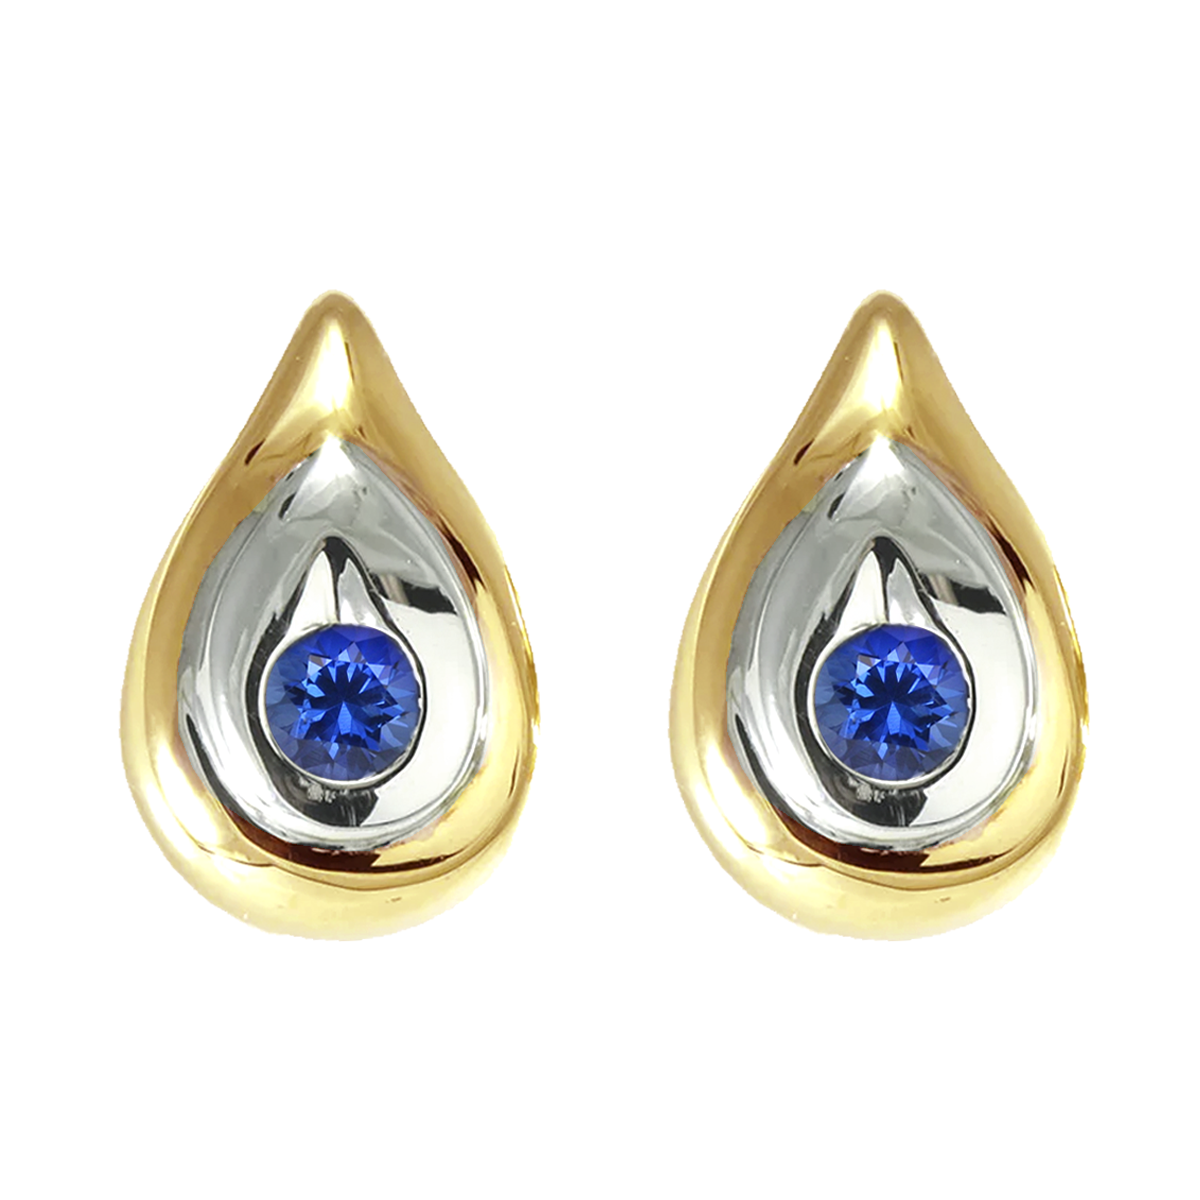 14K Gold Two-Tone Sapphire Earrings